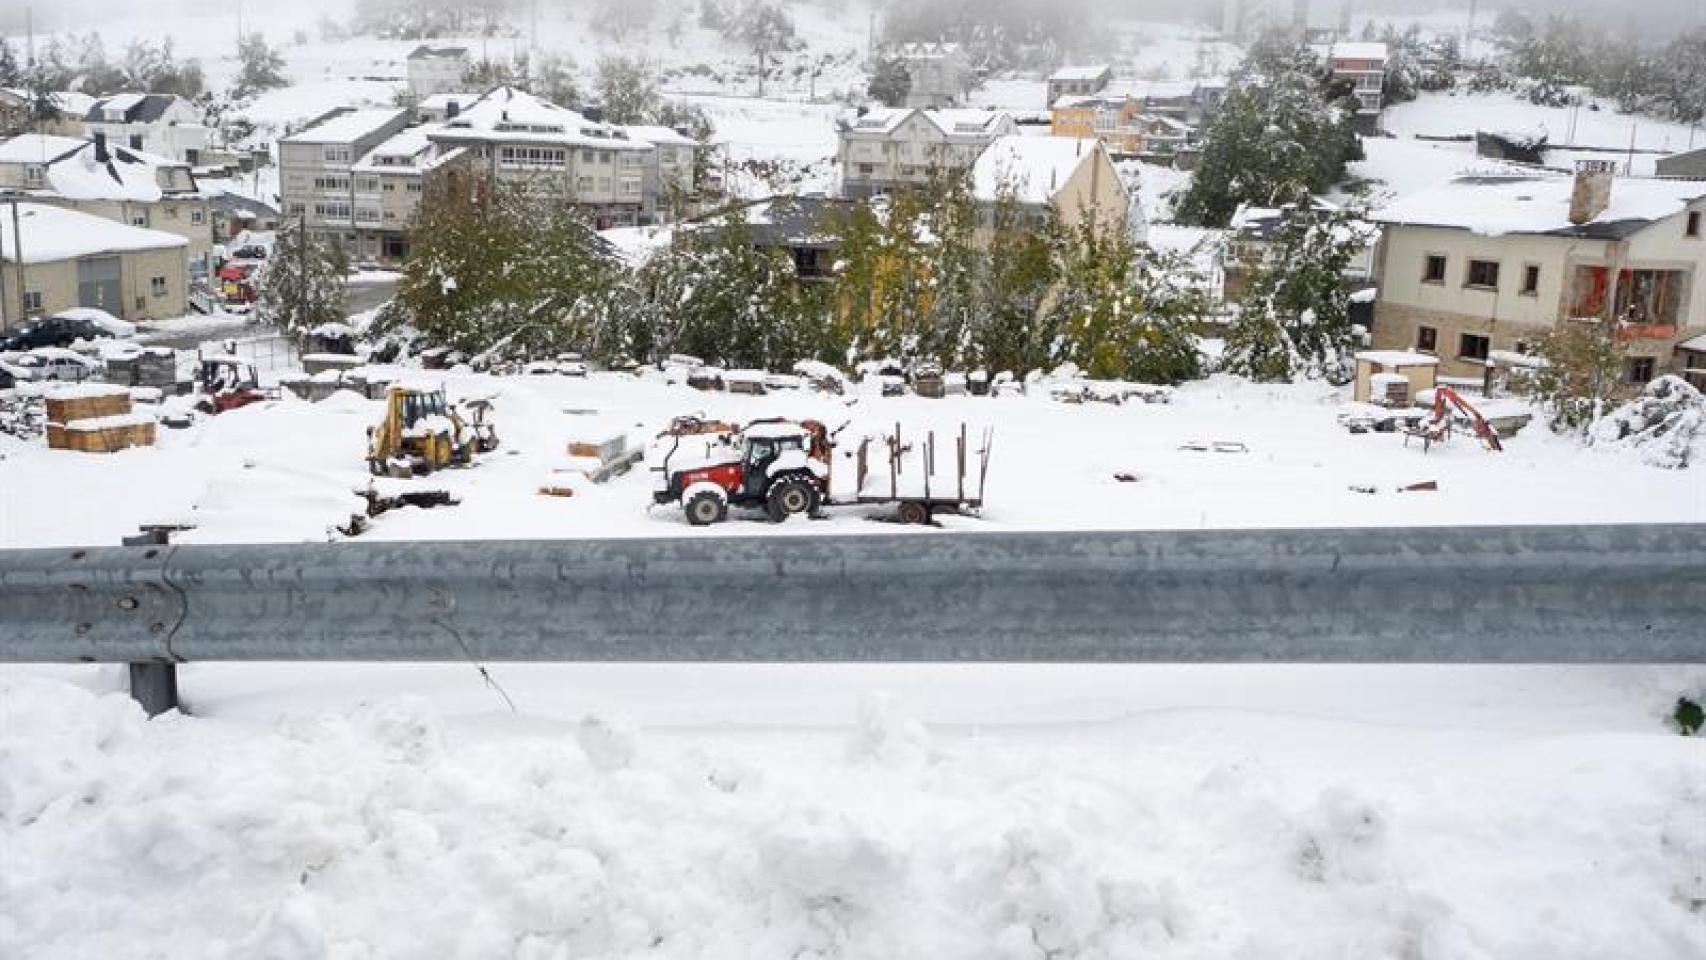 Vista del pueblo de Pedrafita do Cebreiro (Galicia) que se encuentra cubierto por la nieve.